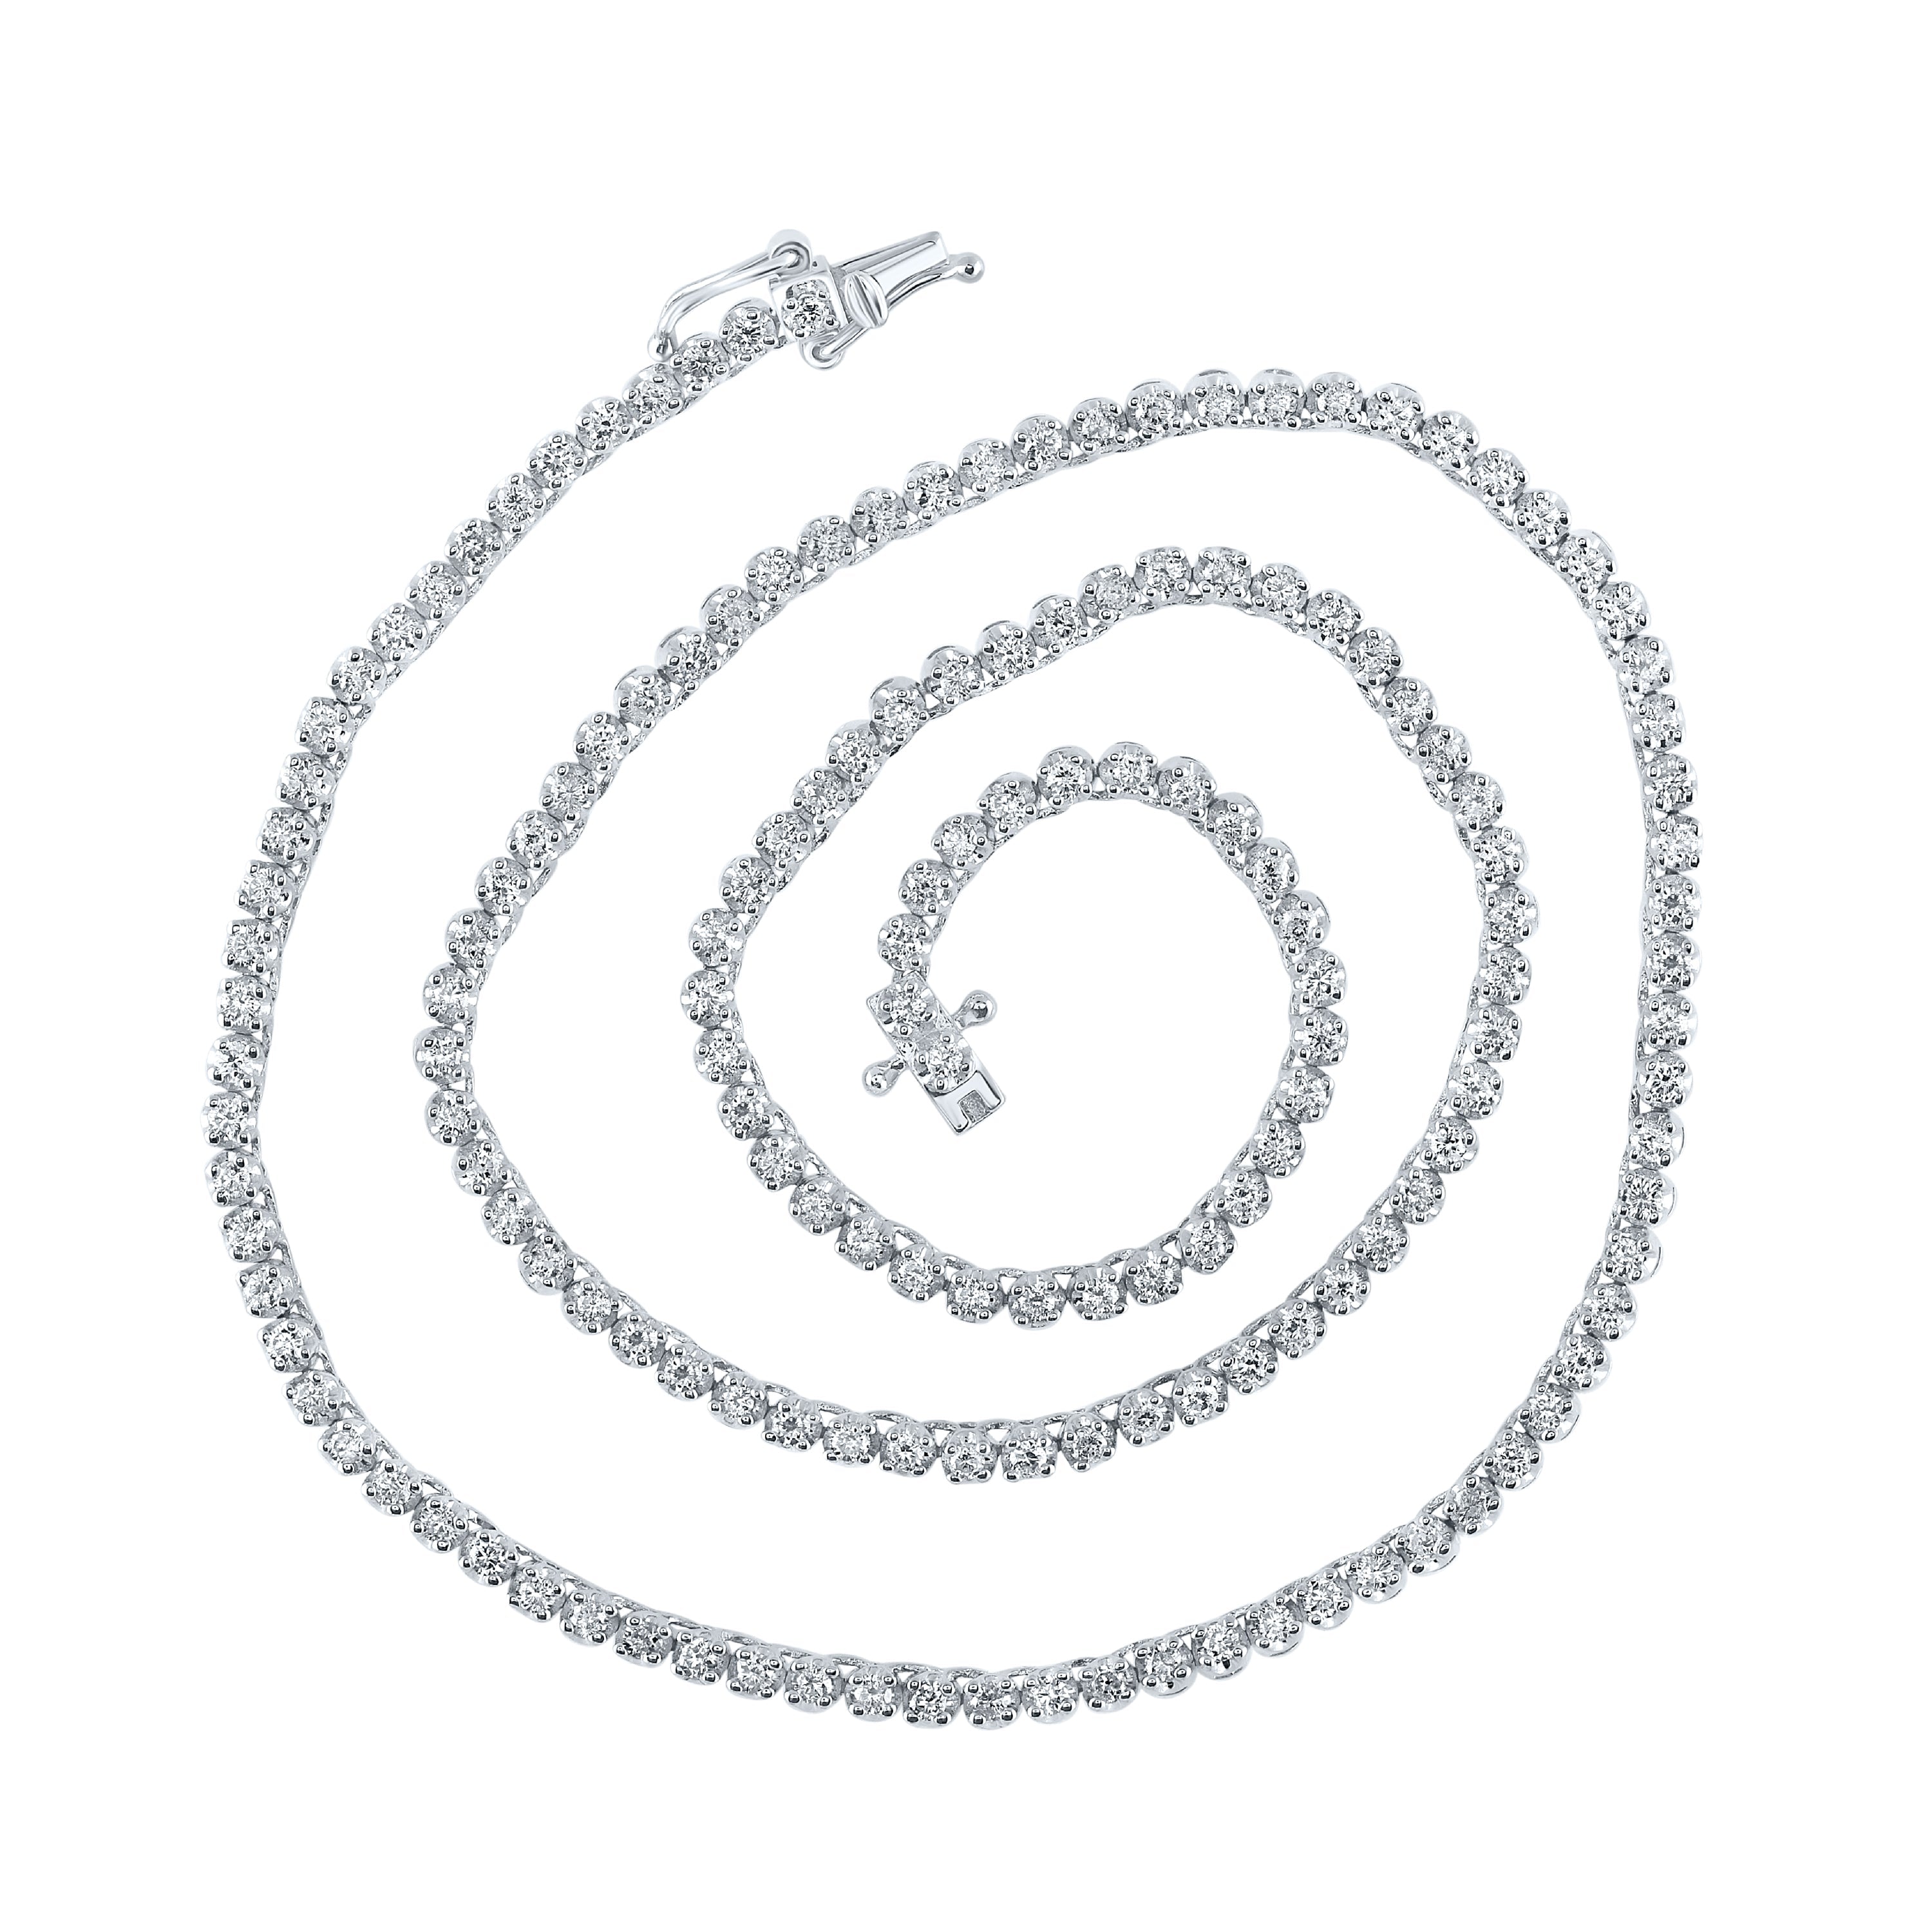 10kt White Gold Mens Round Diamond 16-inch Tennis Chain Necklace 2-7/8 Cttw